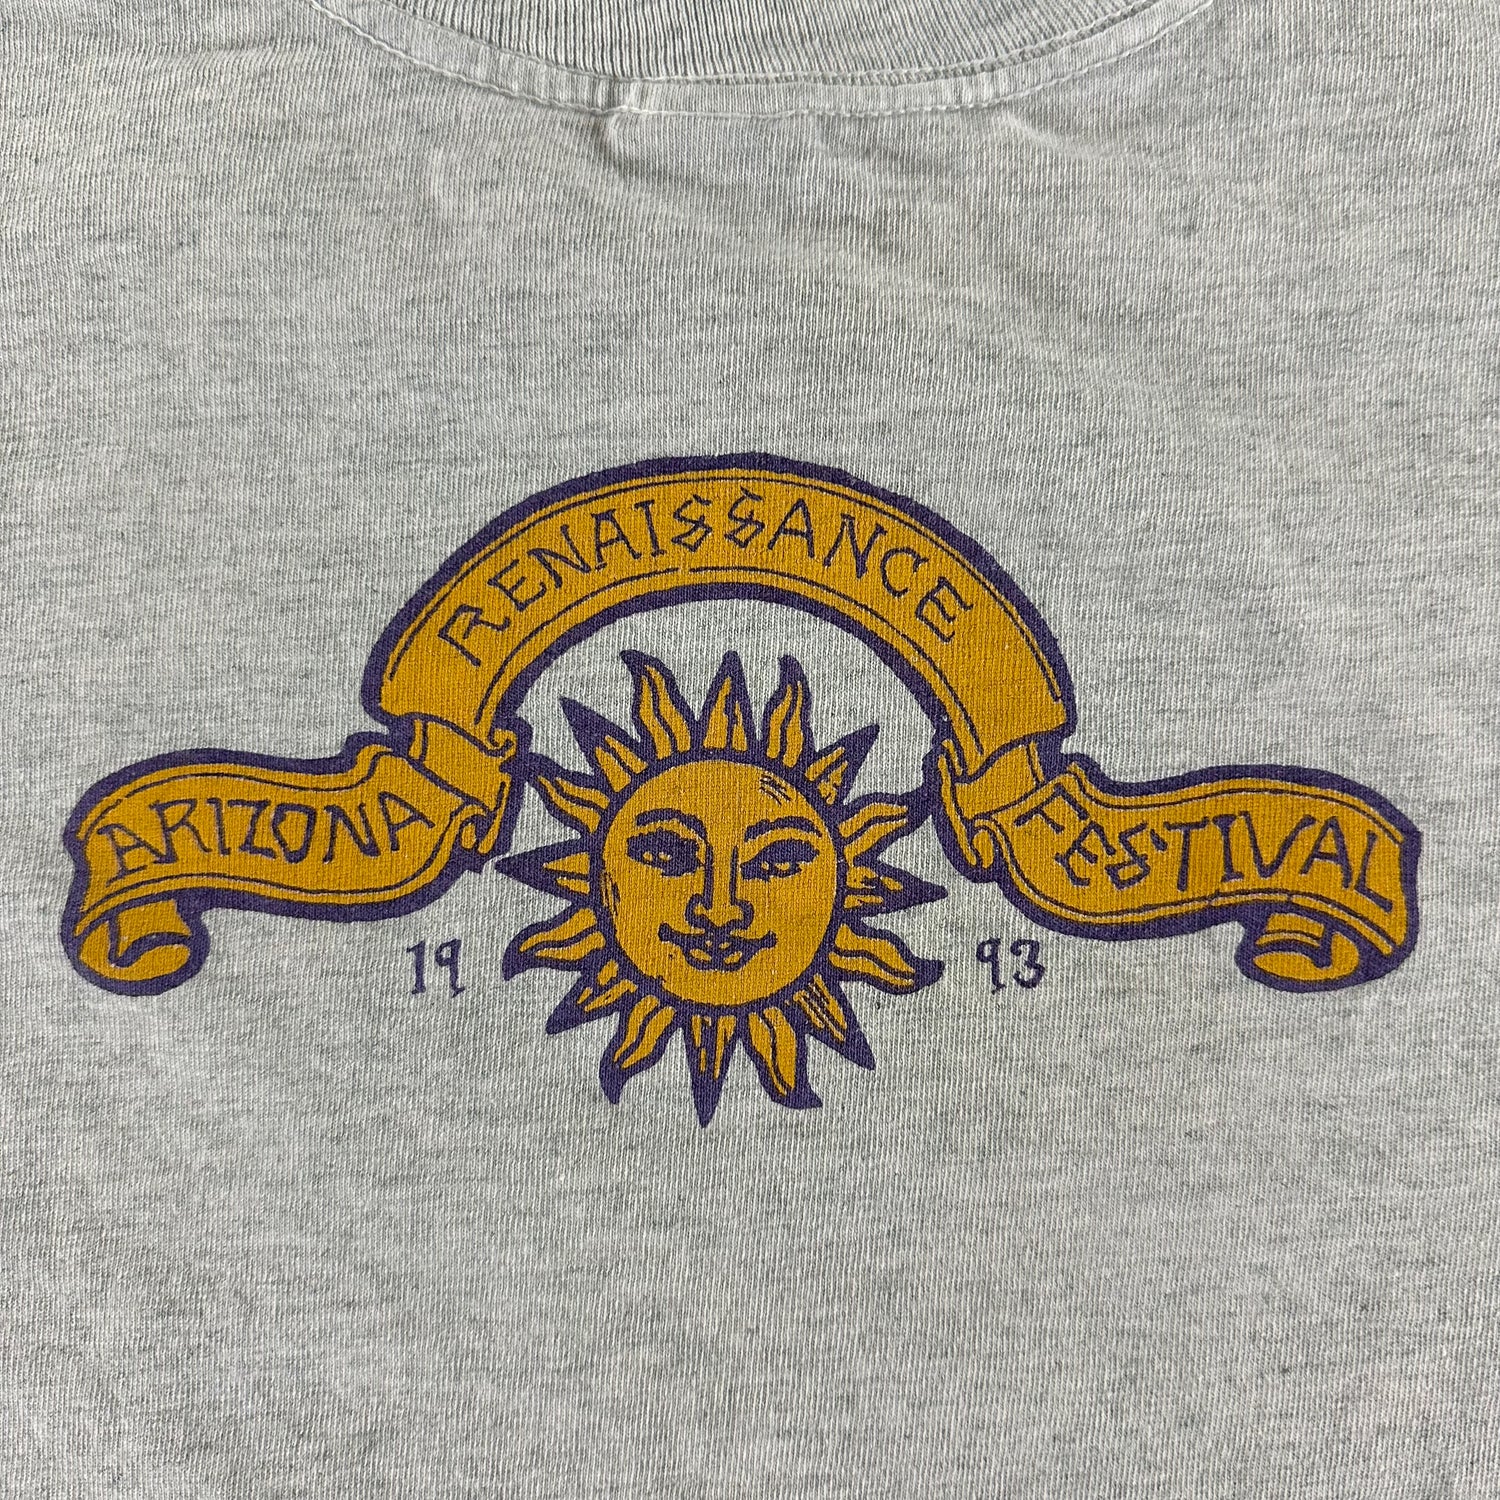 Vintage 1993 Renaissance Festival T-shirt size Large